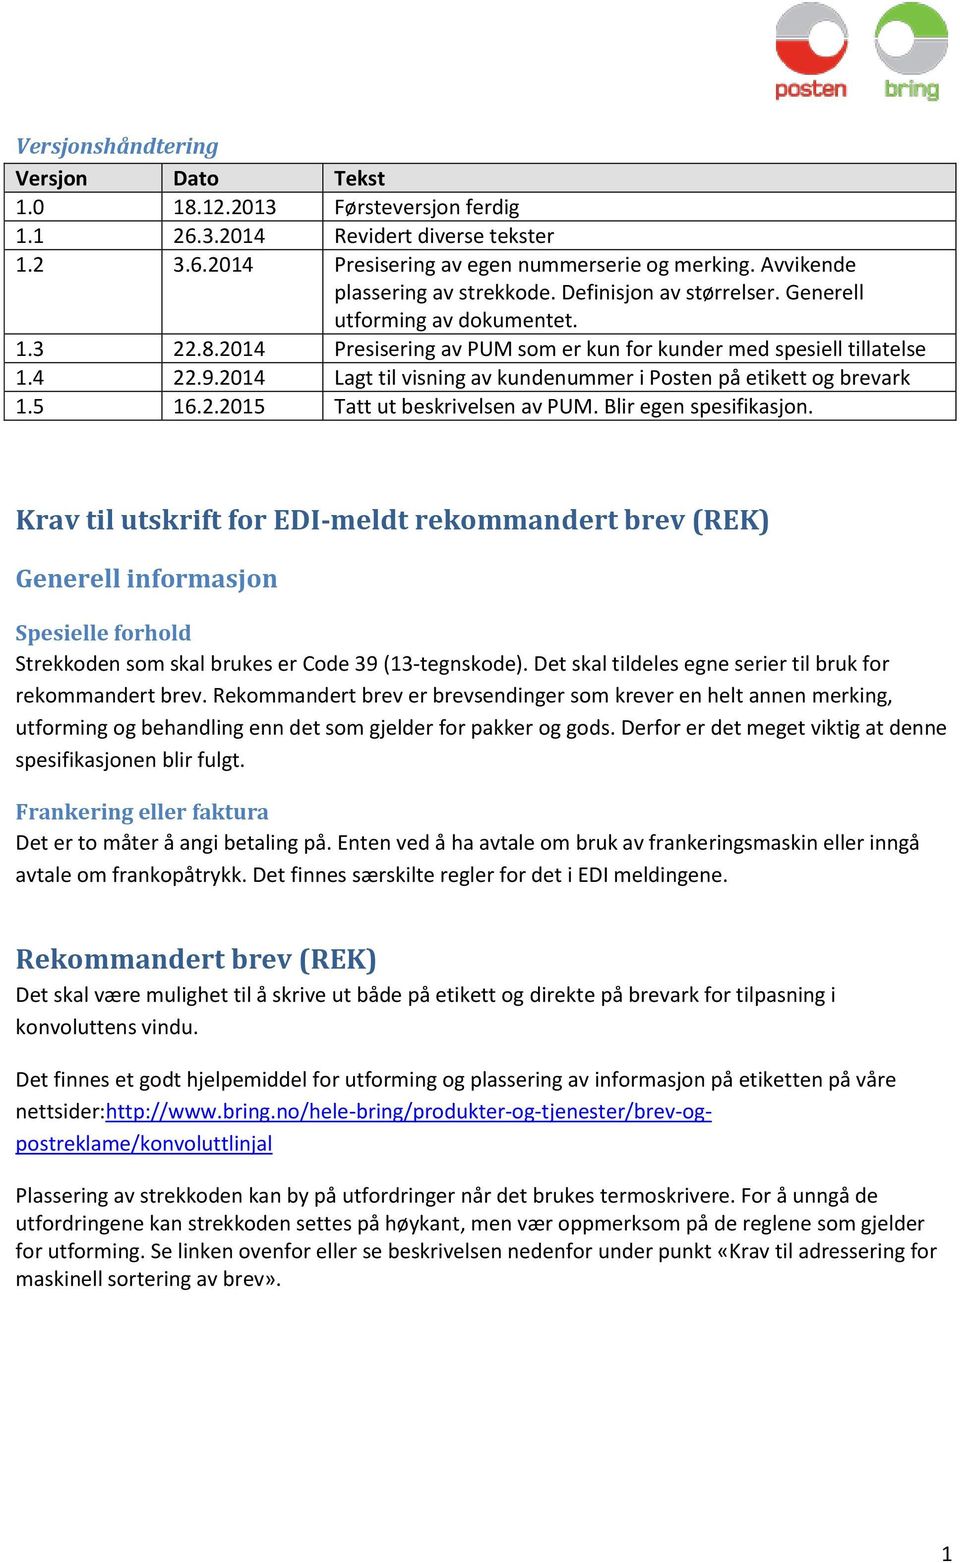 Krav til utskrift for EDImeldt rekommandert brev (REK) - PDF Free ...